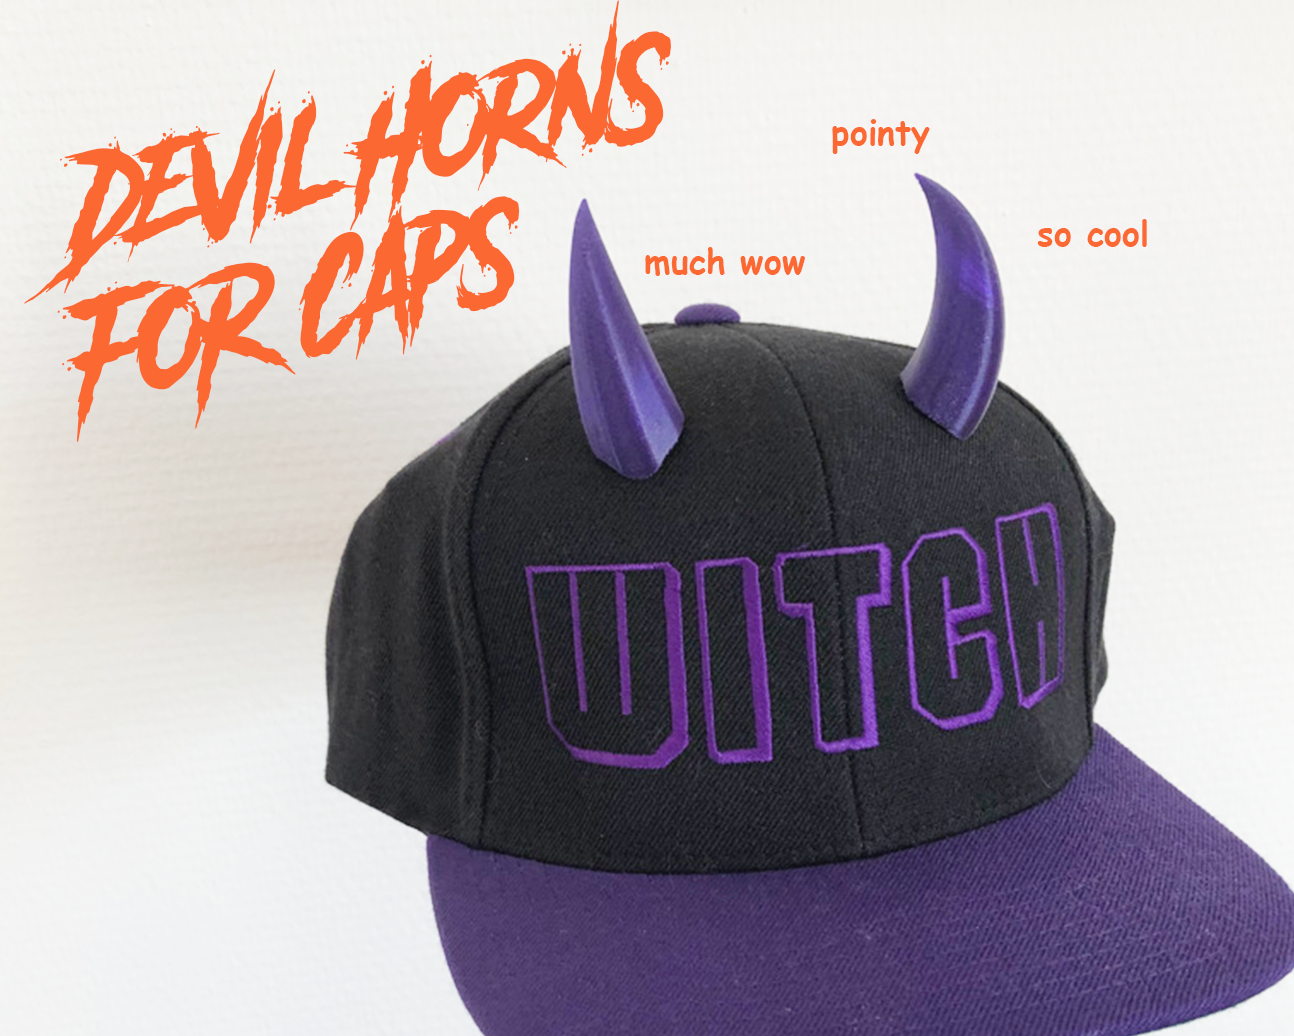 Devil horns for cap